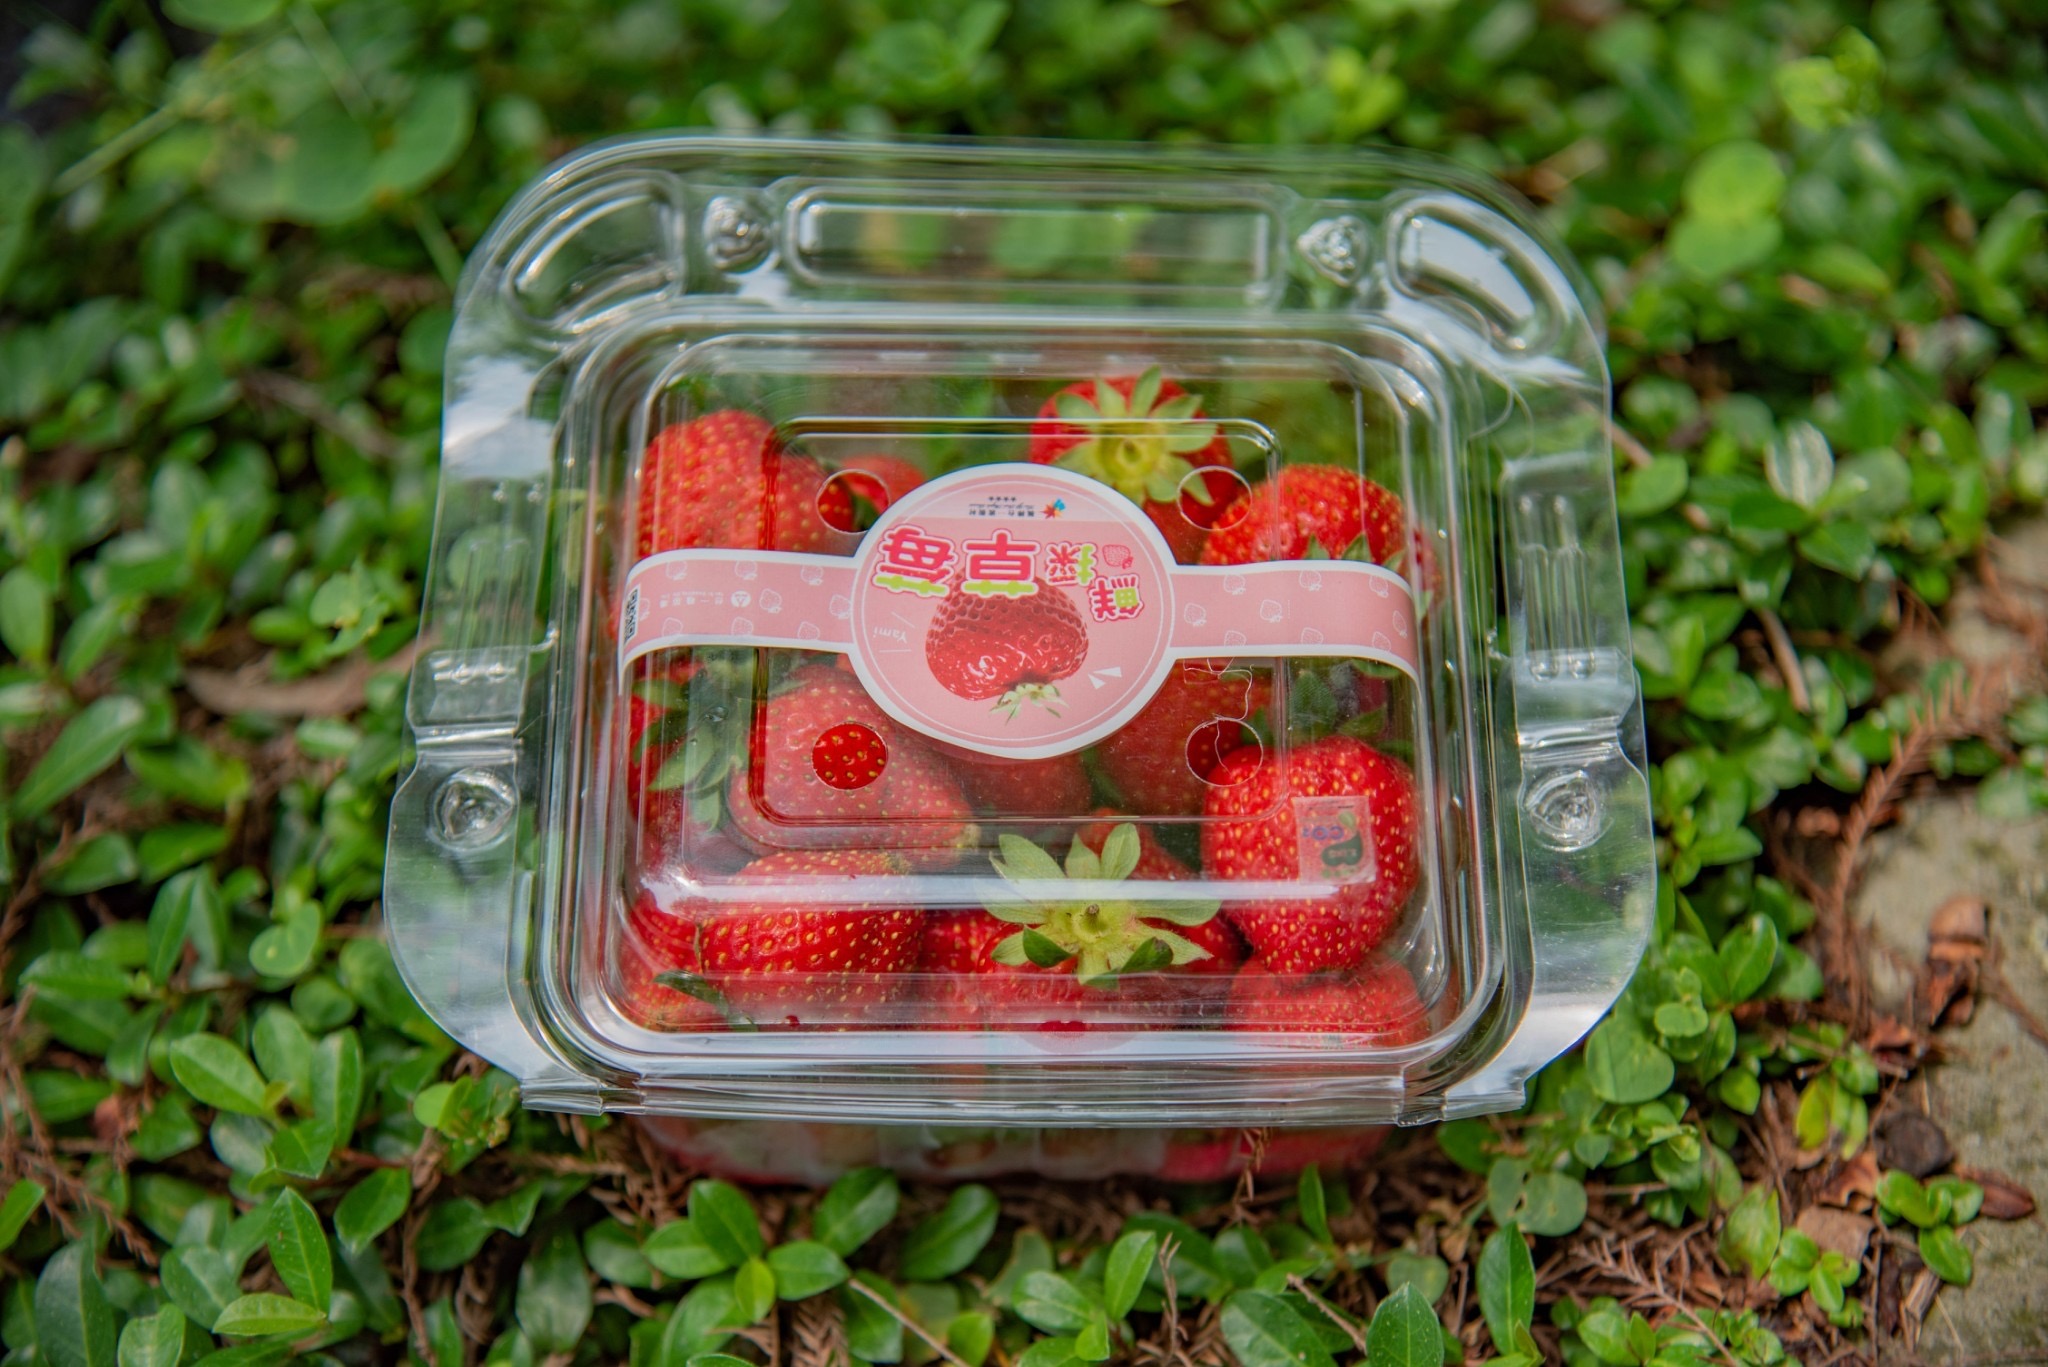 台一生態休閒農場所生產的「400克塑膠手提盒草莓」